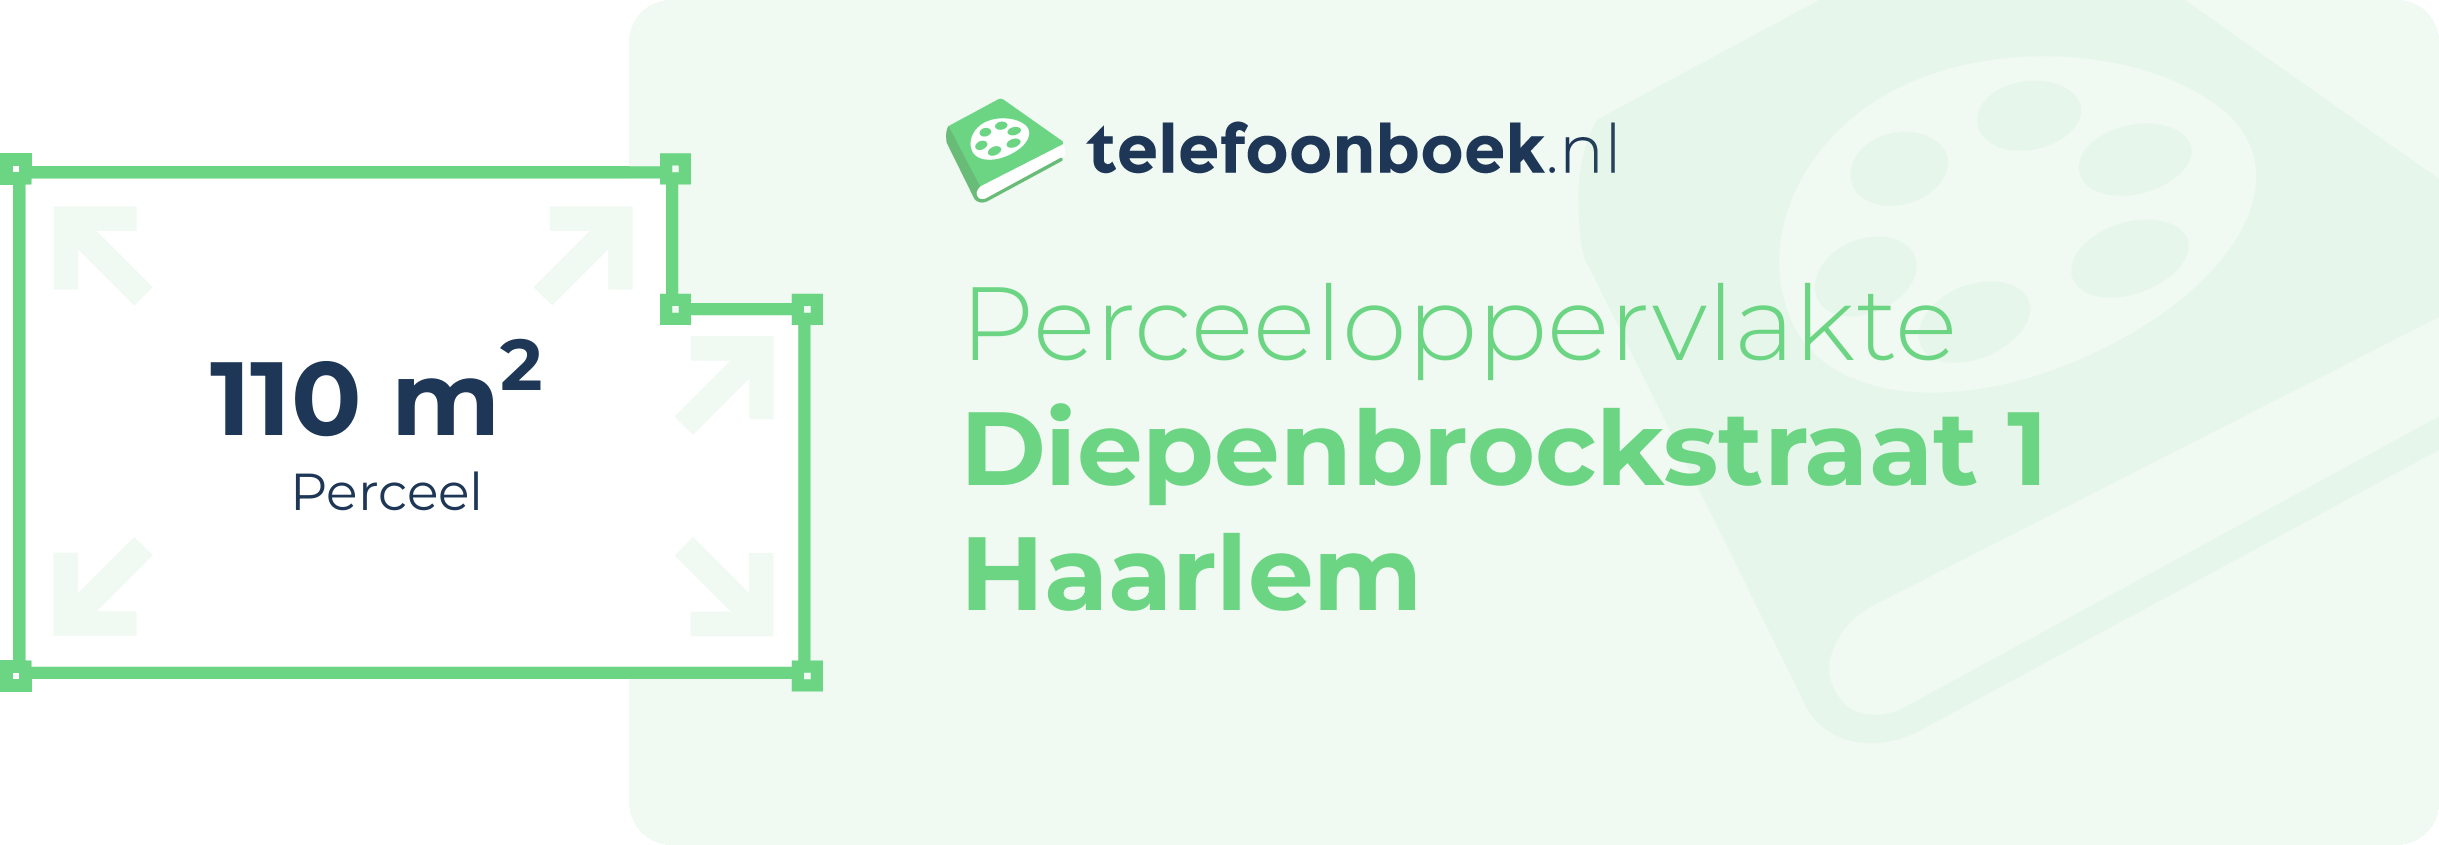 Perceeloppervlakte Diepenbrockstraat 1 Haarlem